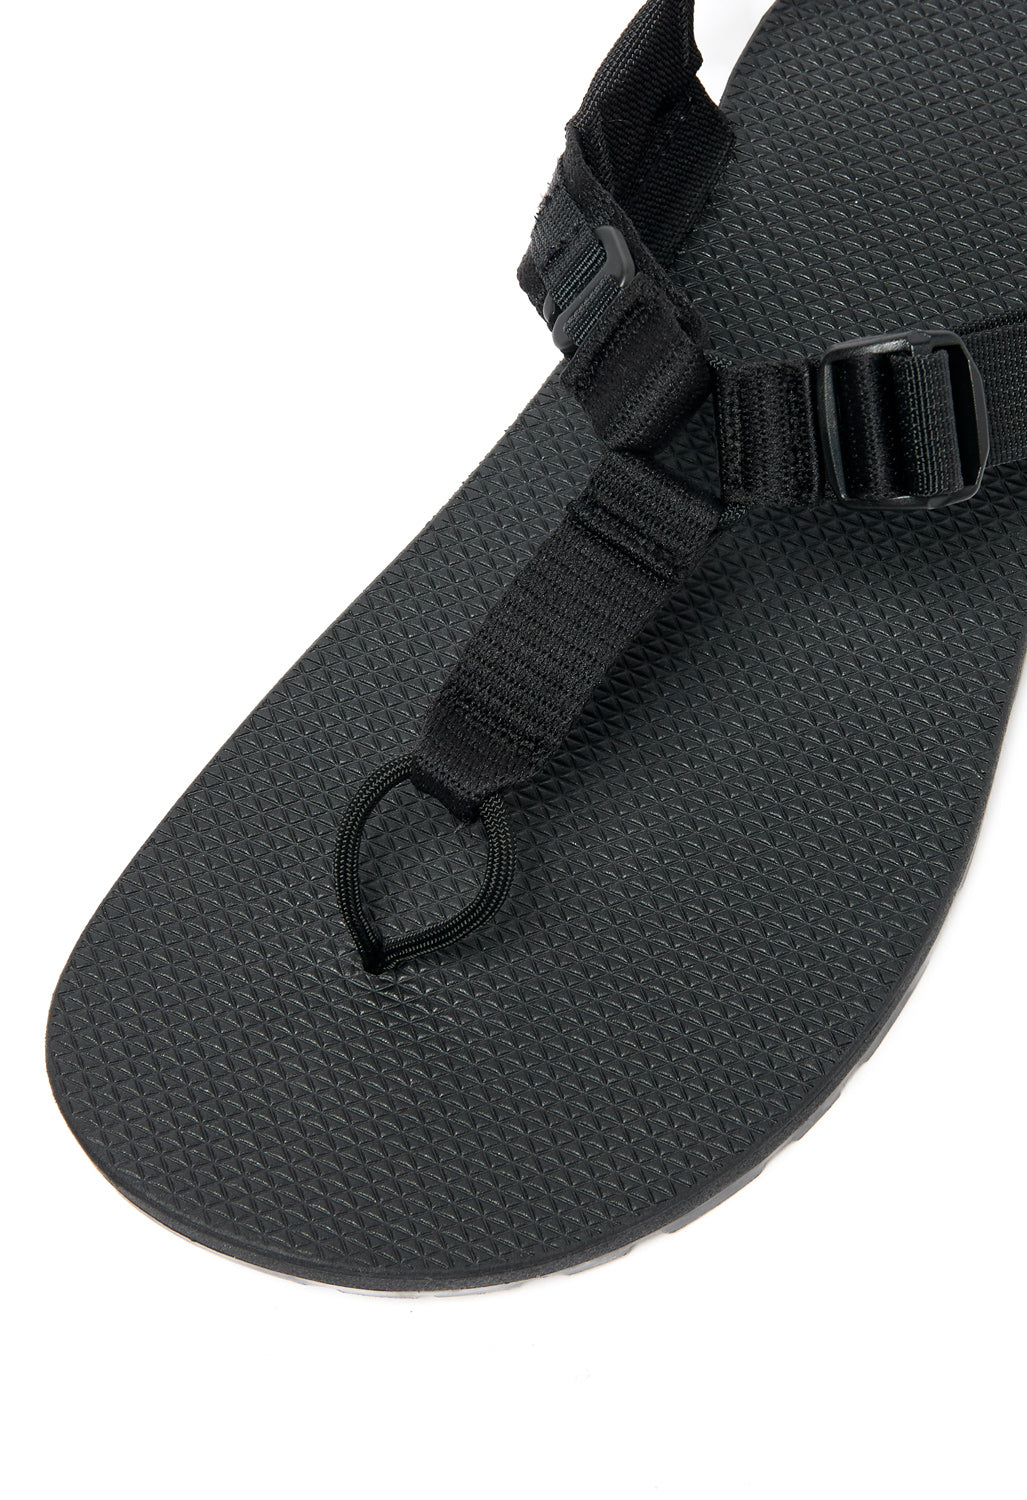 Bedrock Sandals Cairn Evo Sandals - Black